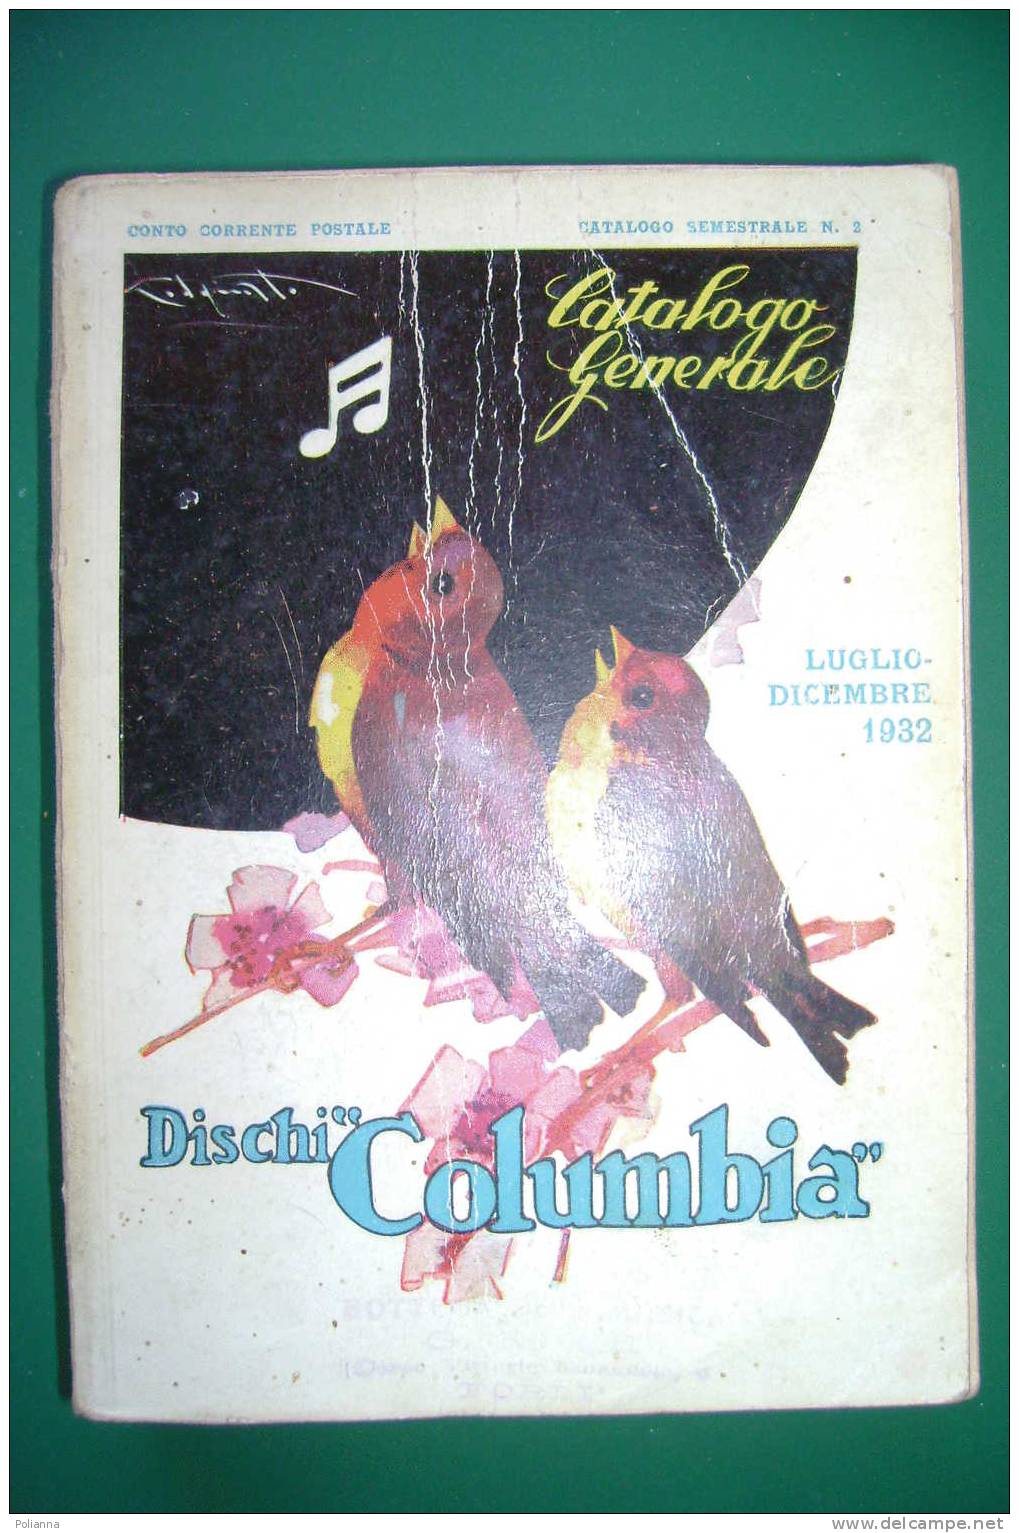 PDM/17 CATALOGO GENERALE 1932-DISCHI COLUMBIA/ill. Codognato - Musik